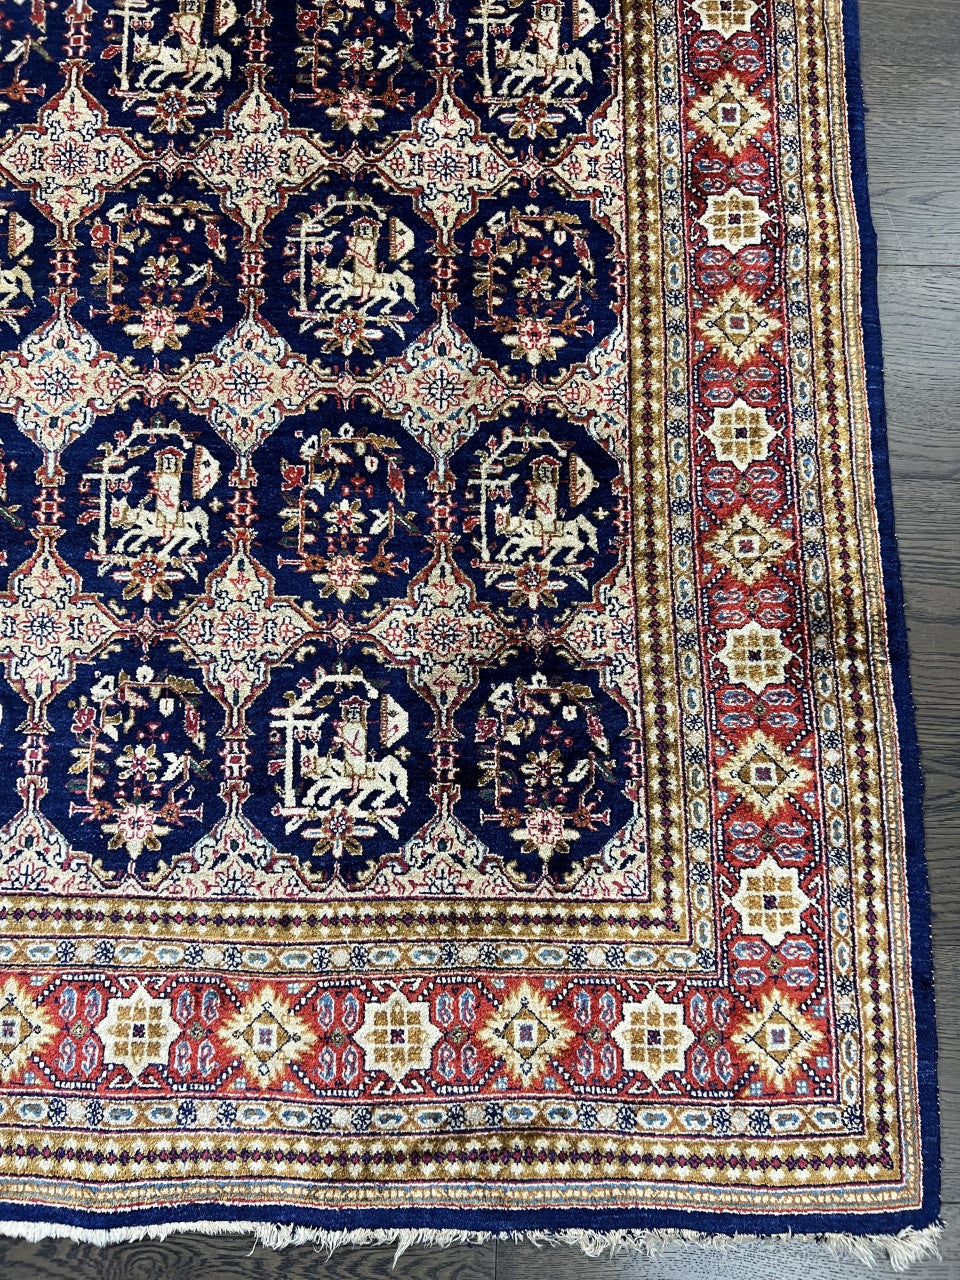 Wonderful vintage decorative silk rug - Hakiemie Rug Gallery